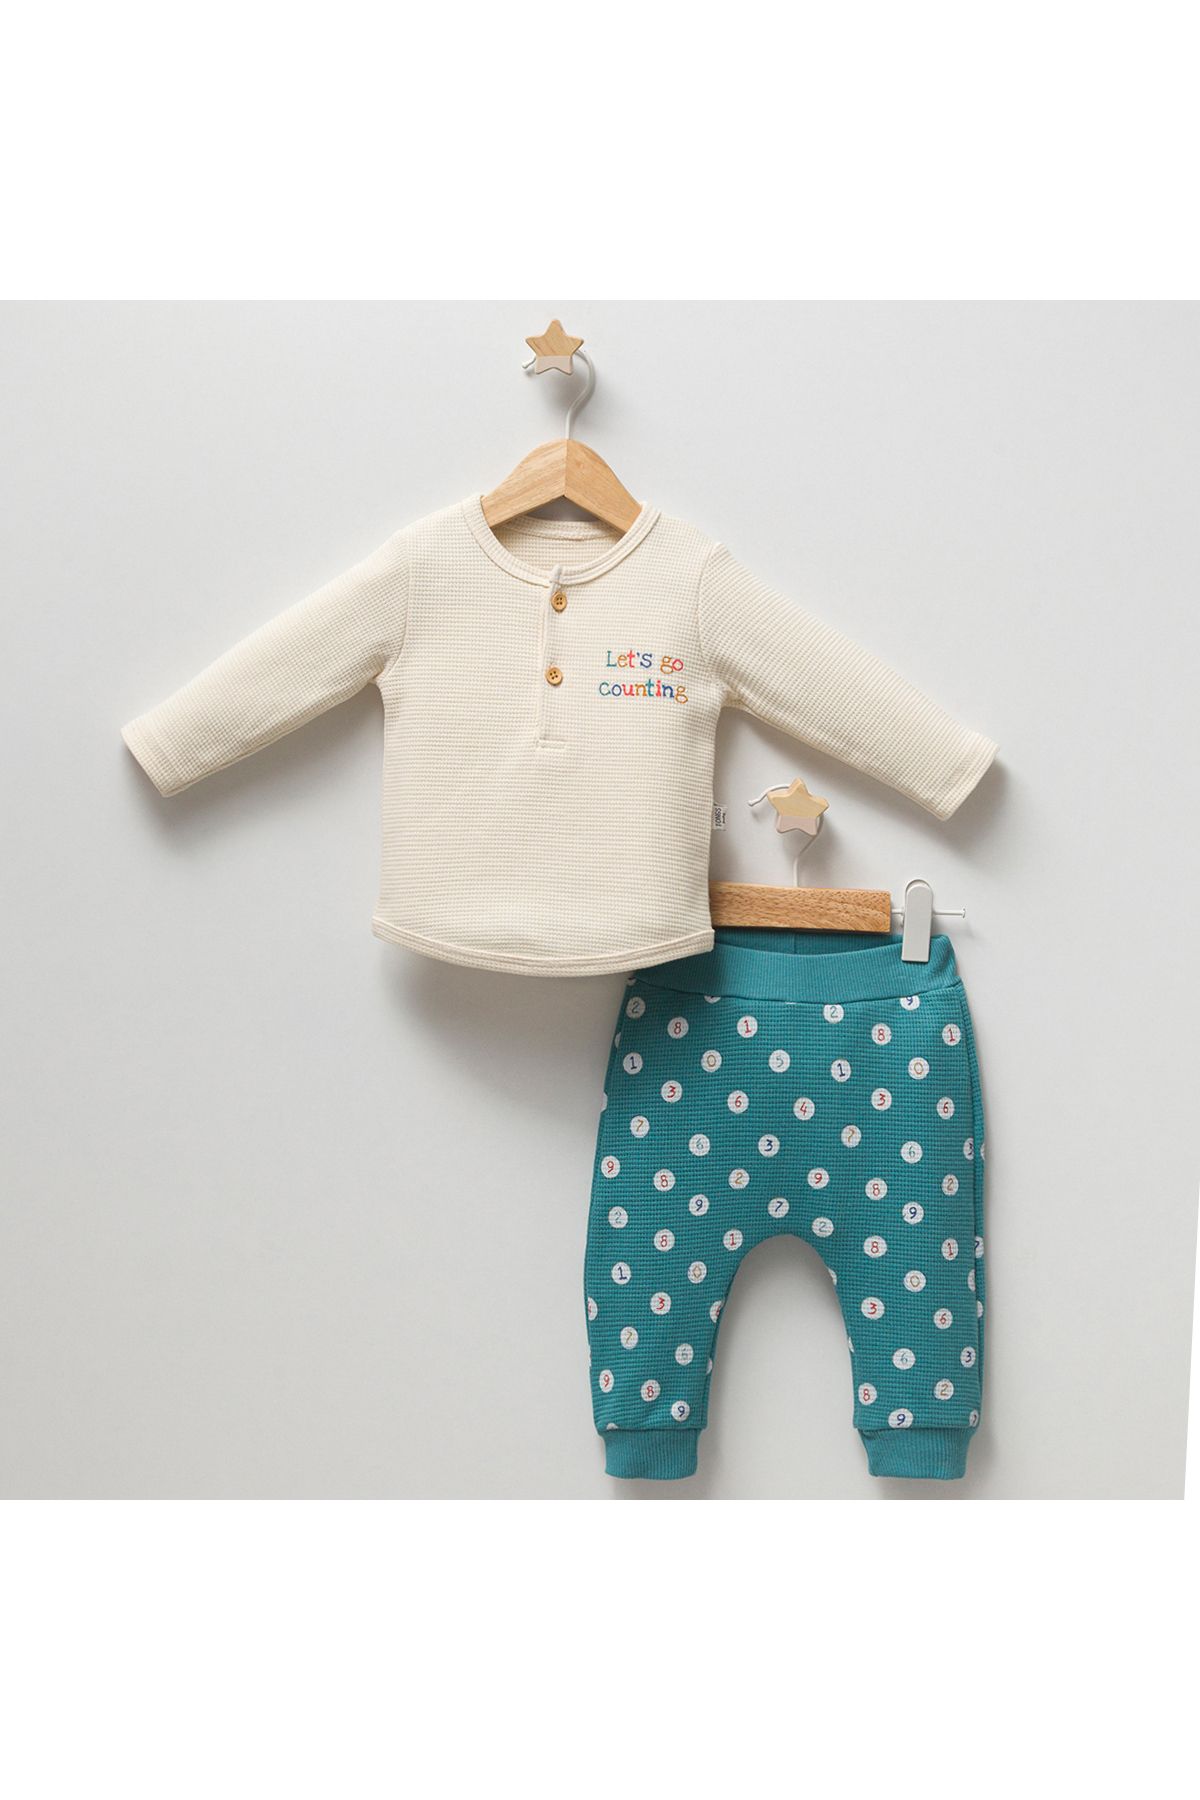 DIDuStore Minik Keşifçi Kız Bebek Giyim Takımı